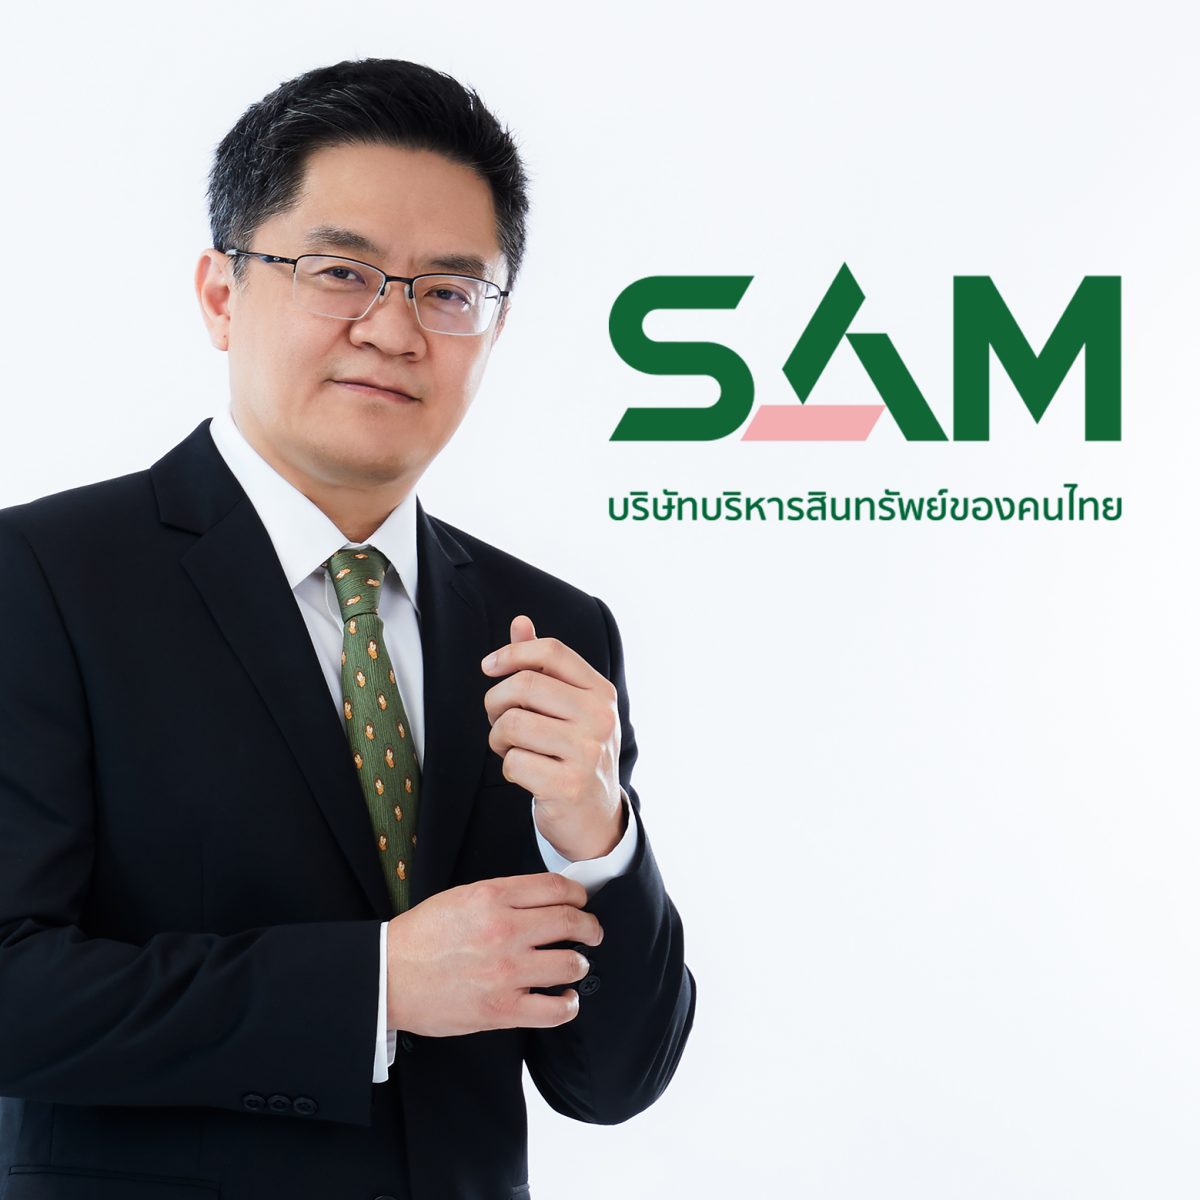 SAM บริษัทบริหารสินทรัพย์ของคนไทย จัดประมูลทรัพย์ NPA ทั้งทรัพย์อยู่อาศัยและทรัพย์ลงทุนทั่วไทยนับร้อยรายการ มูลค่ารวมกว่า 400 ลบ.